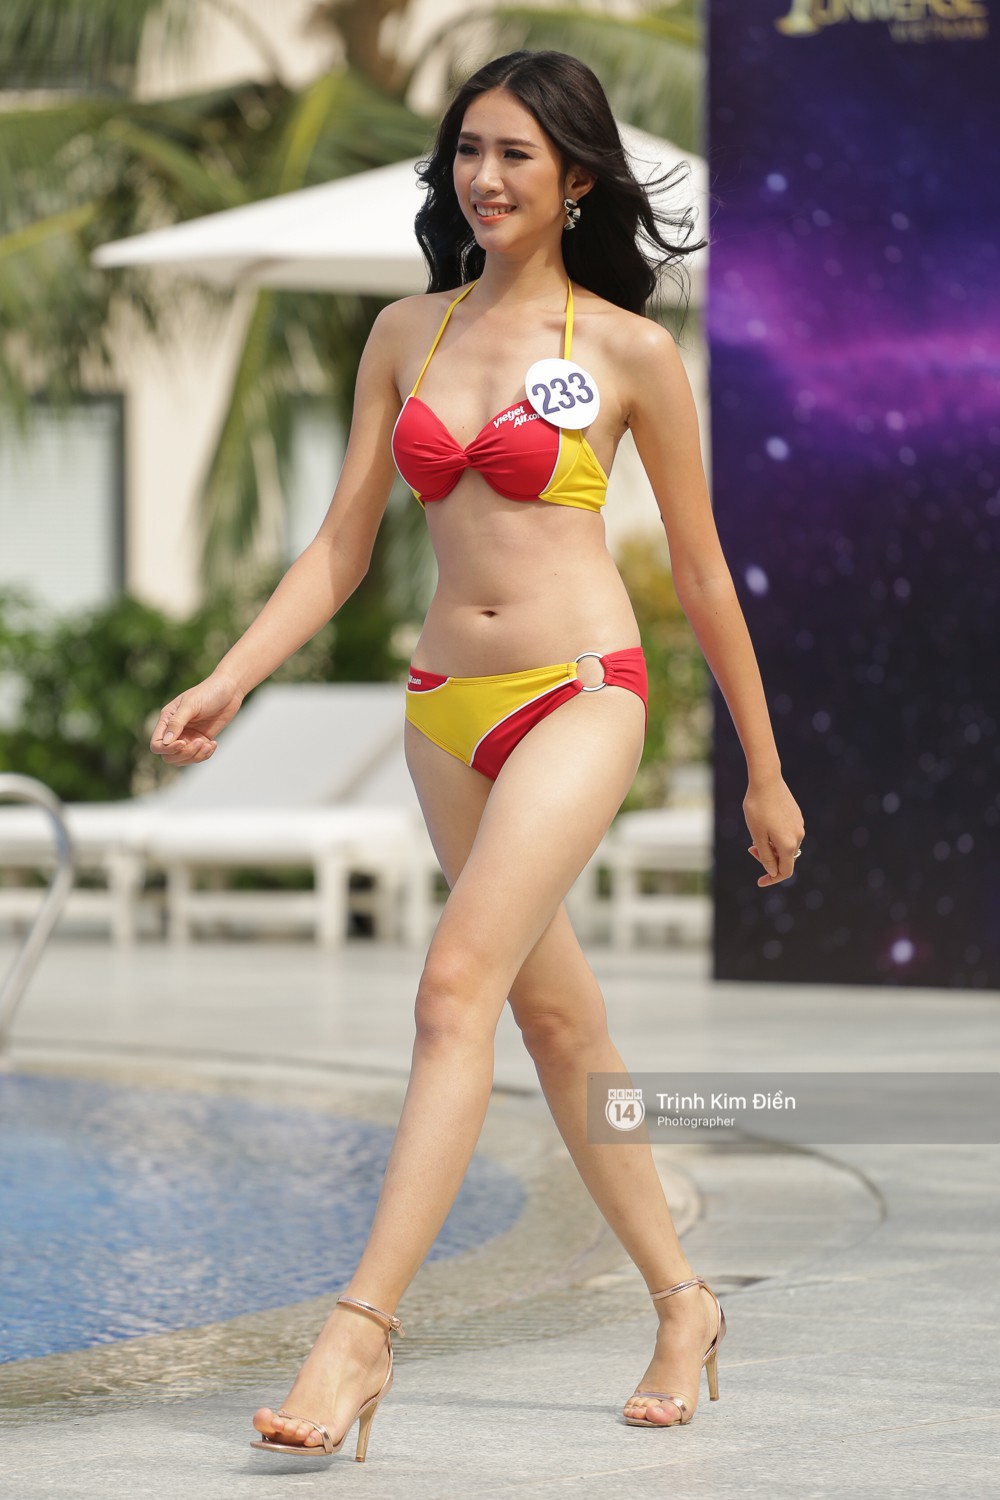 Dàn người đẹp Hoa hậu Hoàn vũ lộ đùi to, bụng mỡ khác xa ảnh photoshop trong phần thi trình diễn bikini - Ảnh 9.